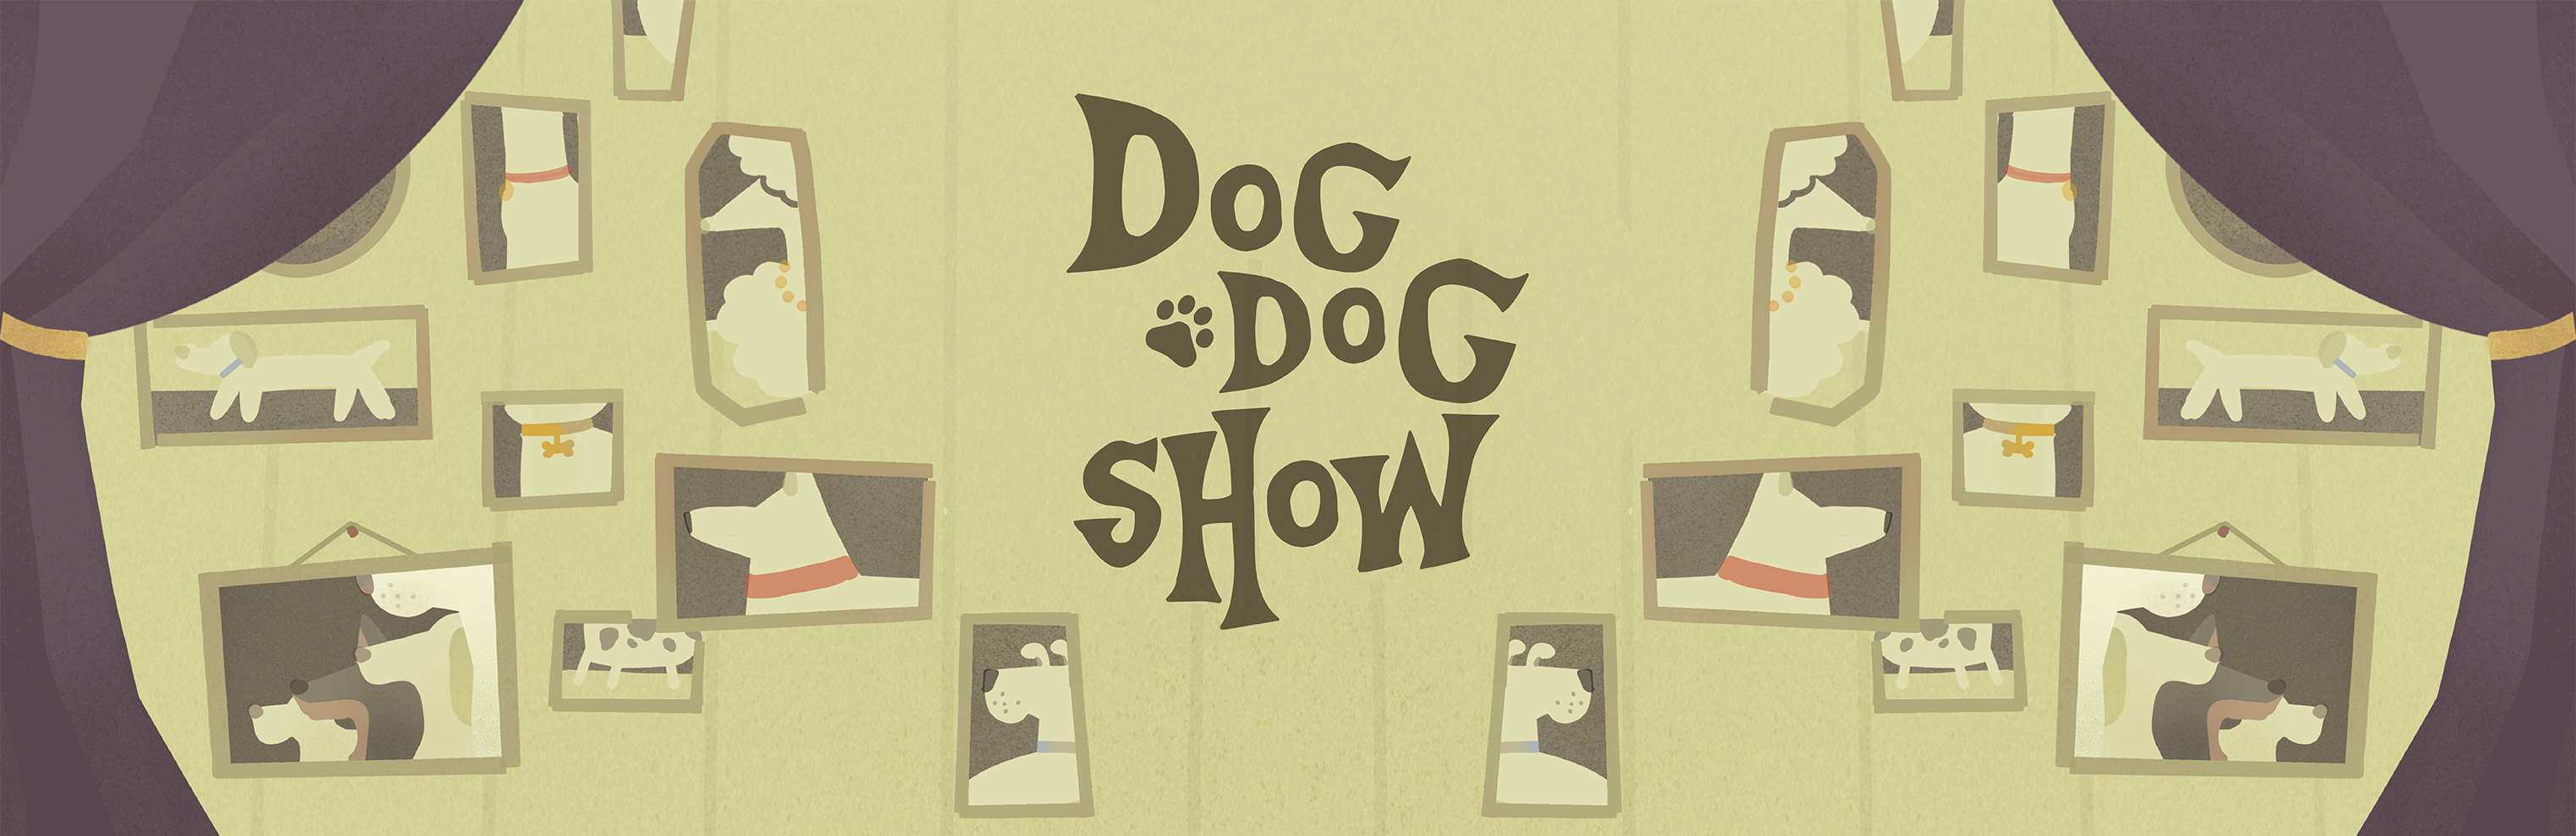 Dog Dog Show